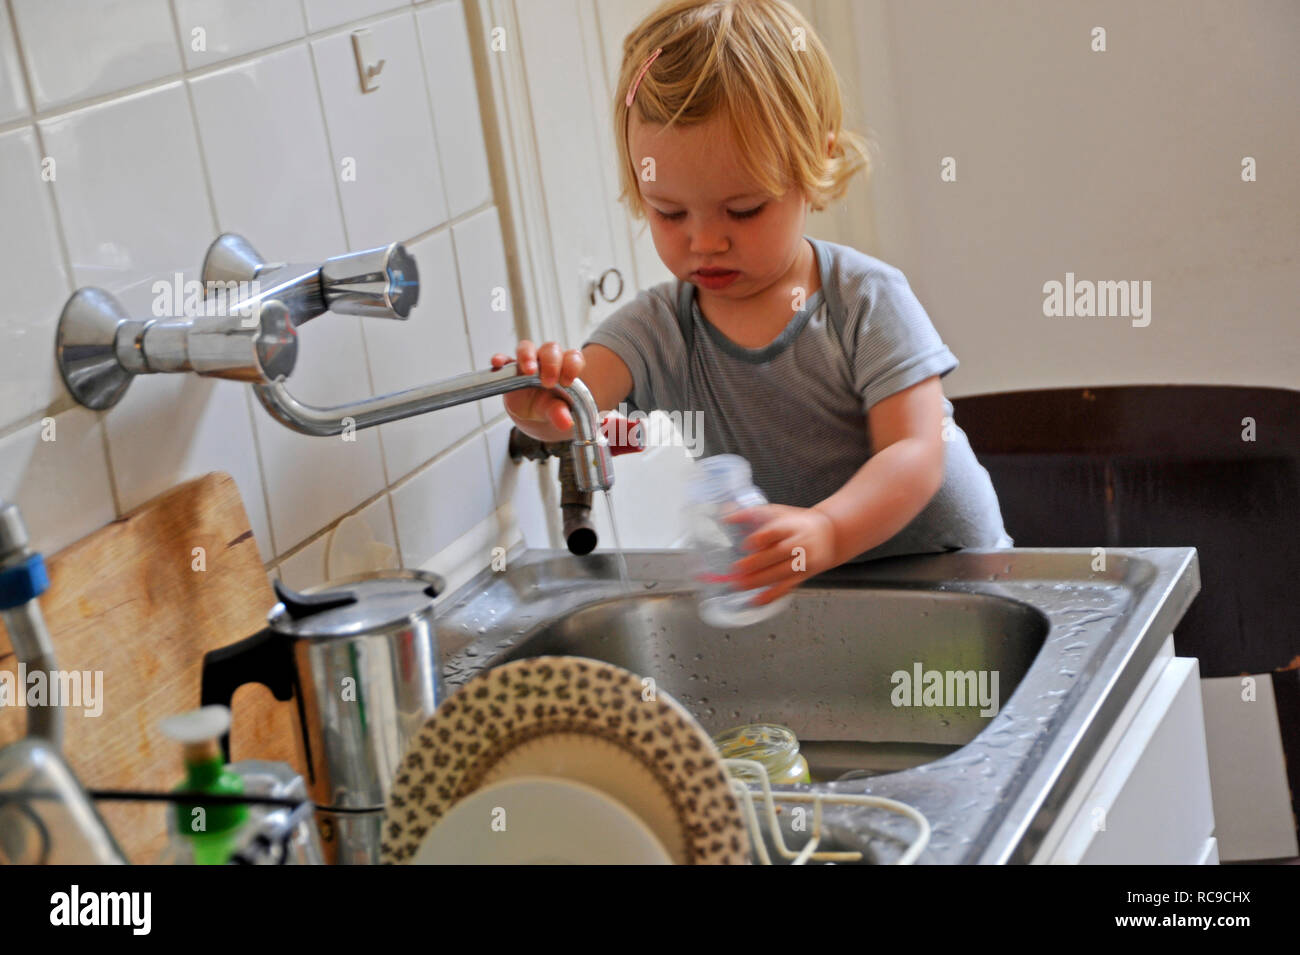 Kleinkind, Mädchen, 2 Jahre alt, in der Küche suis Wasserhahn, Abwaschbecken | petit enfant, jeune fille, âgée de deux ans, à un robinet d'eau Banque D'Images